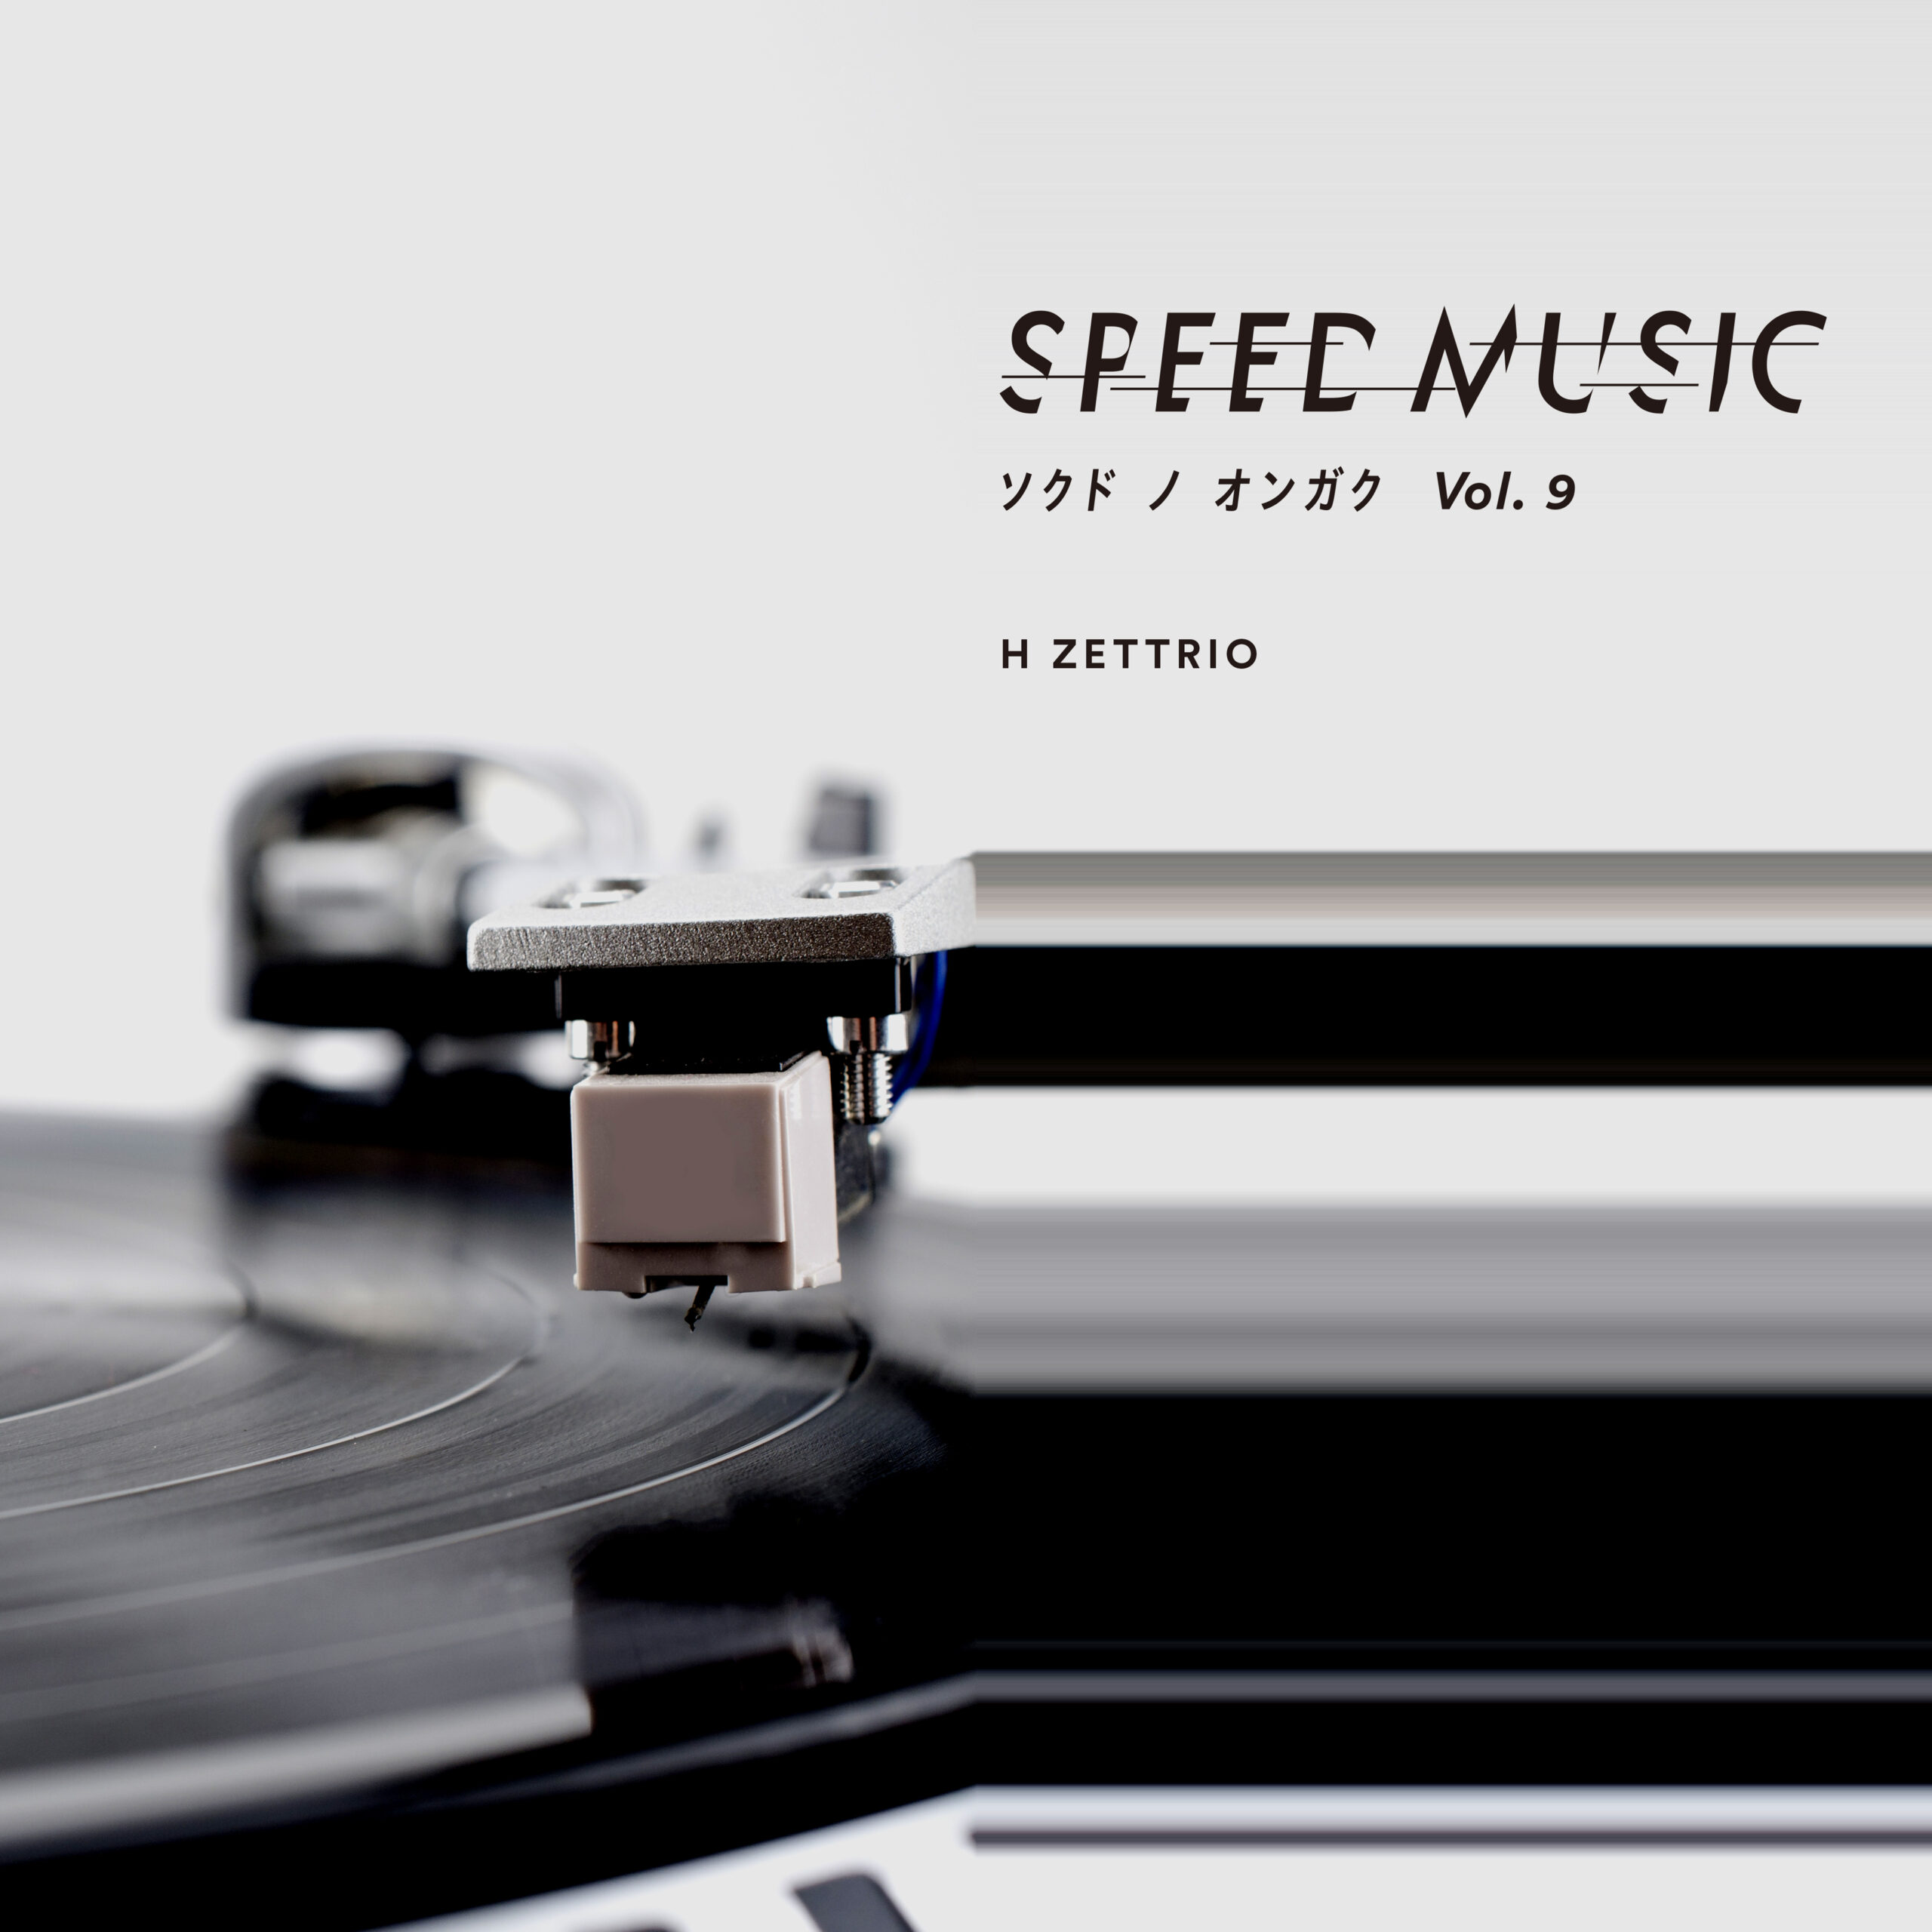 H ZETTRIO 「SPEED MUSIC ソクドノオンガク Vol.9」